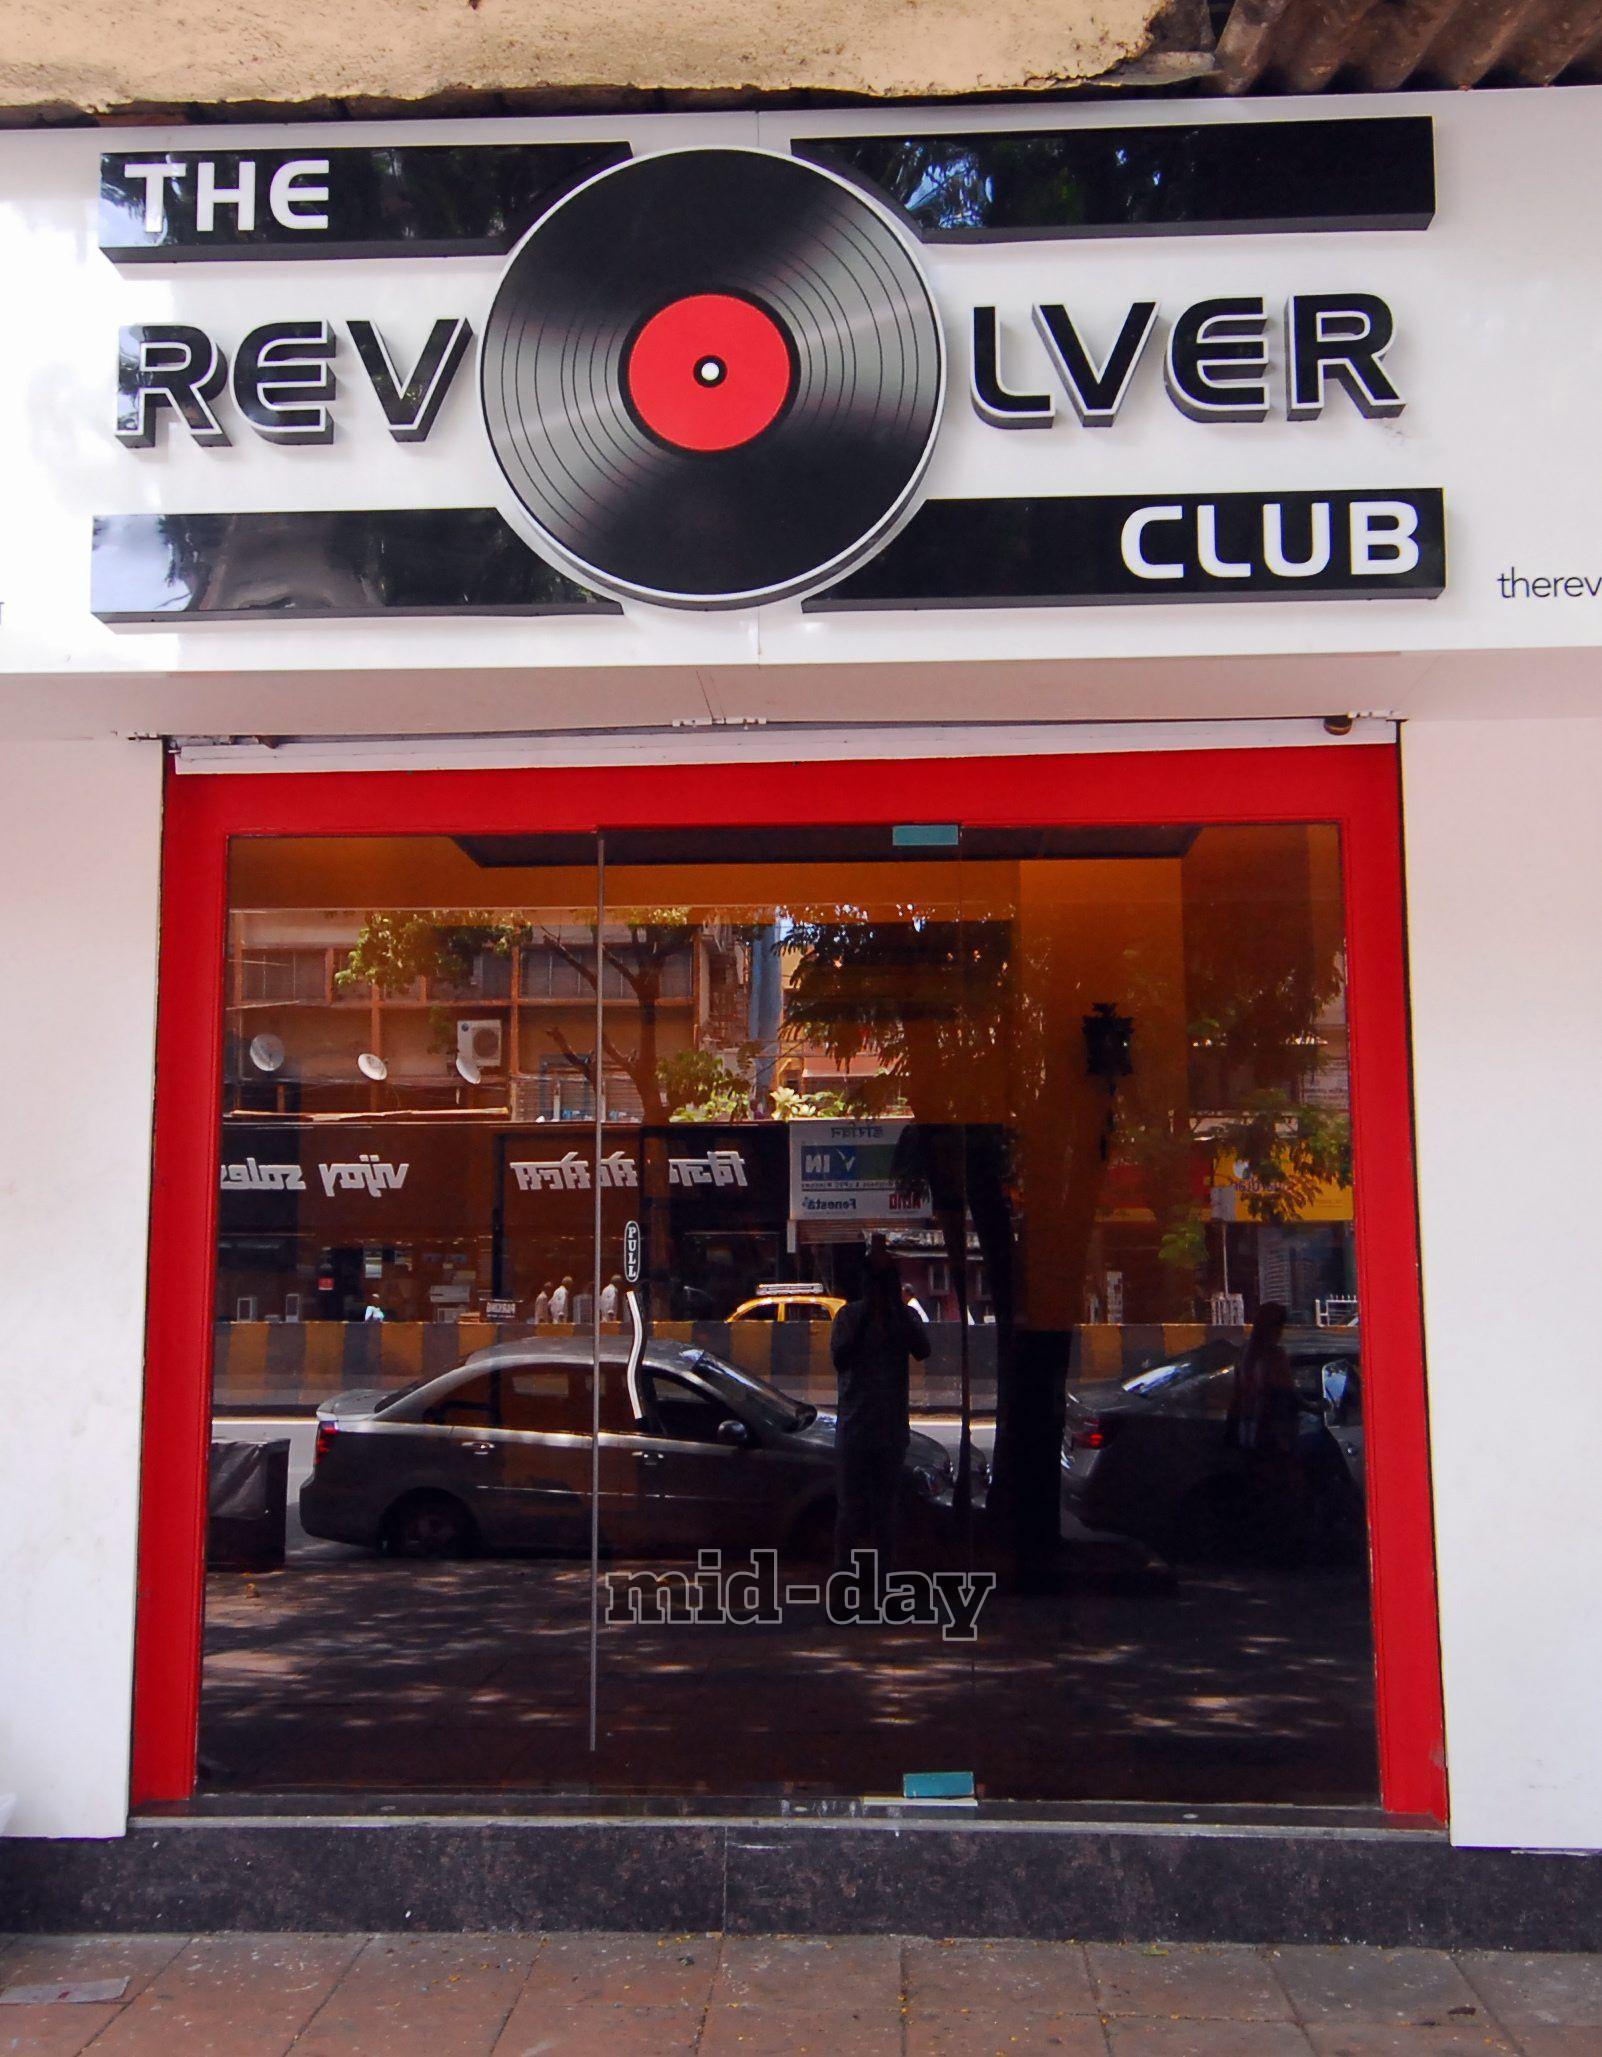 The Revolver Club